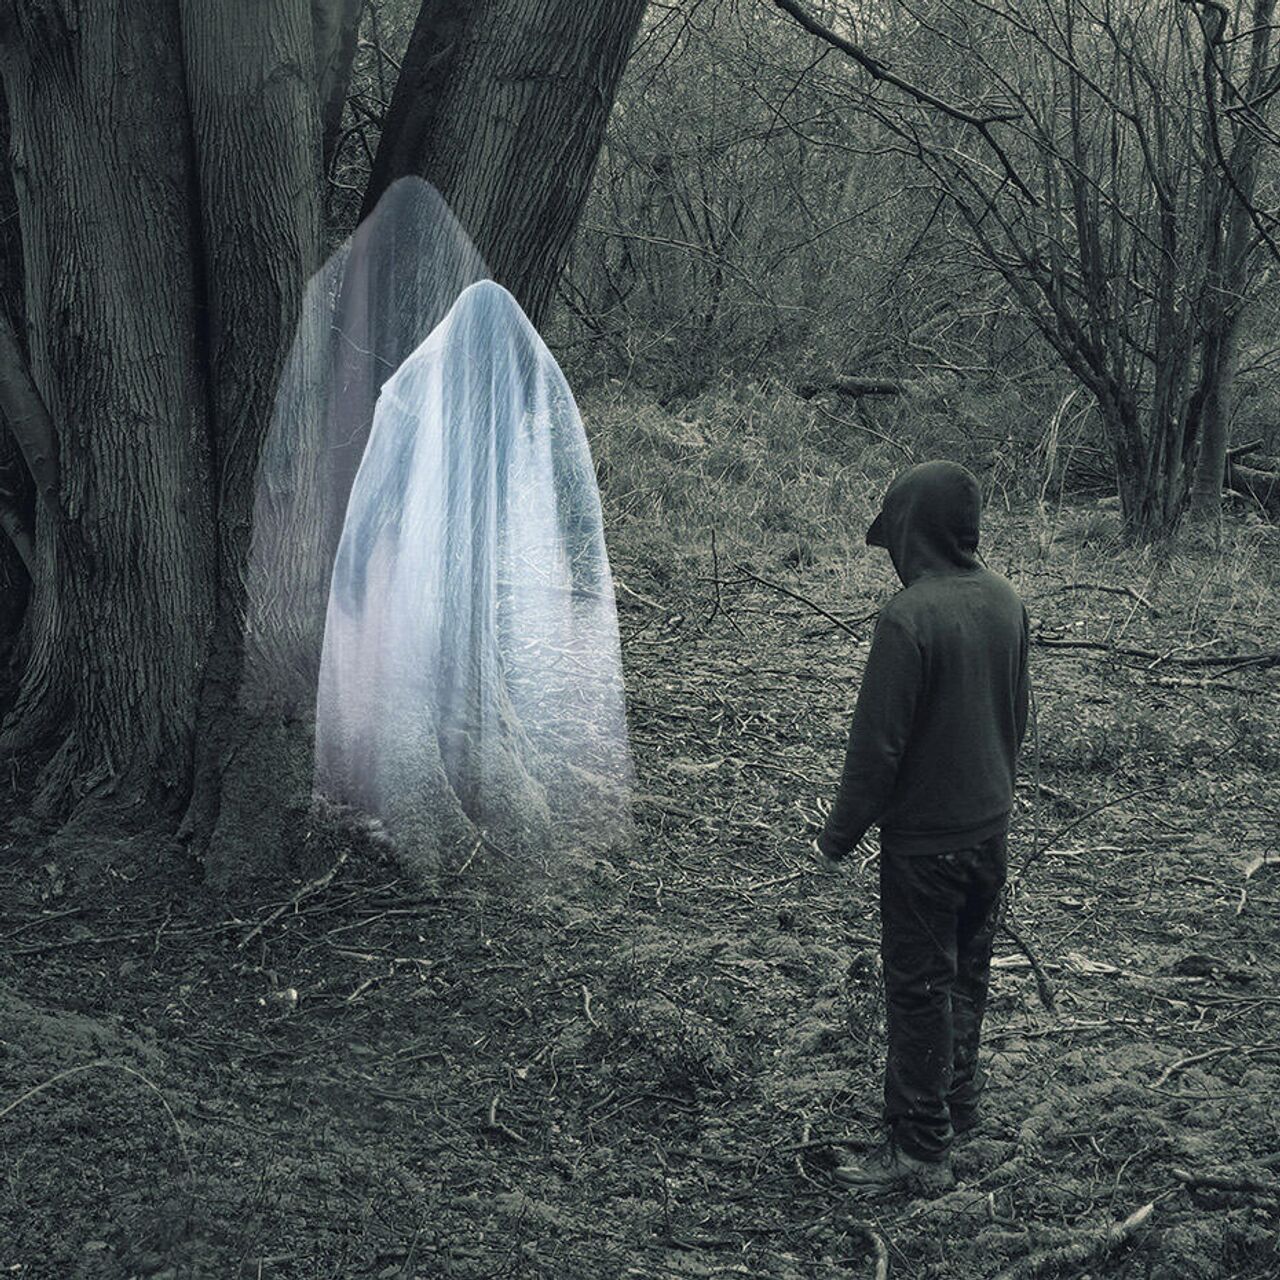 Фотоснимки с призраками: Подделки или реальность. Смотрите сами